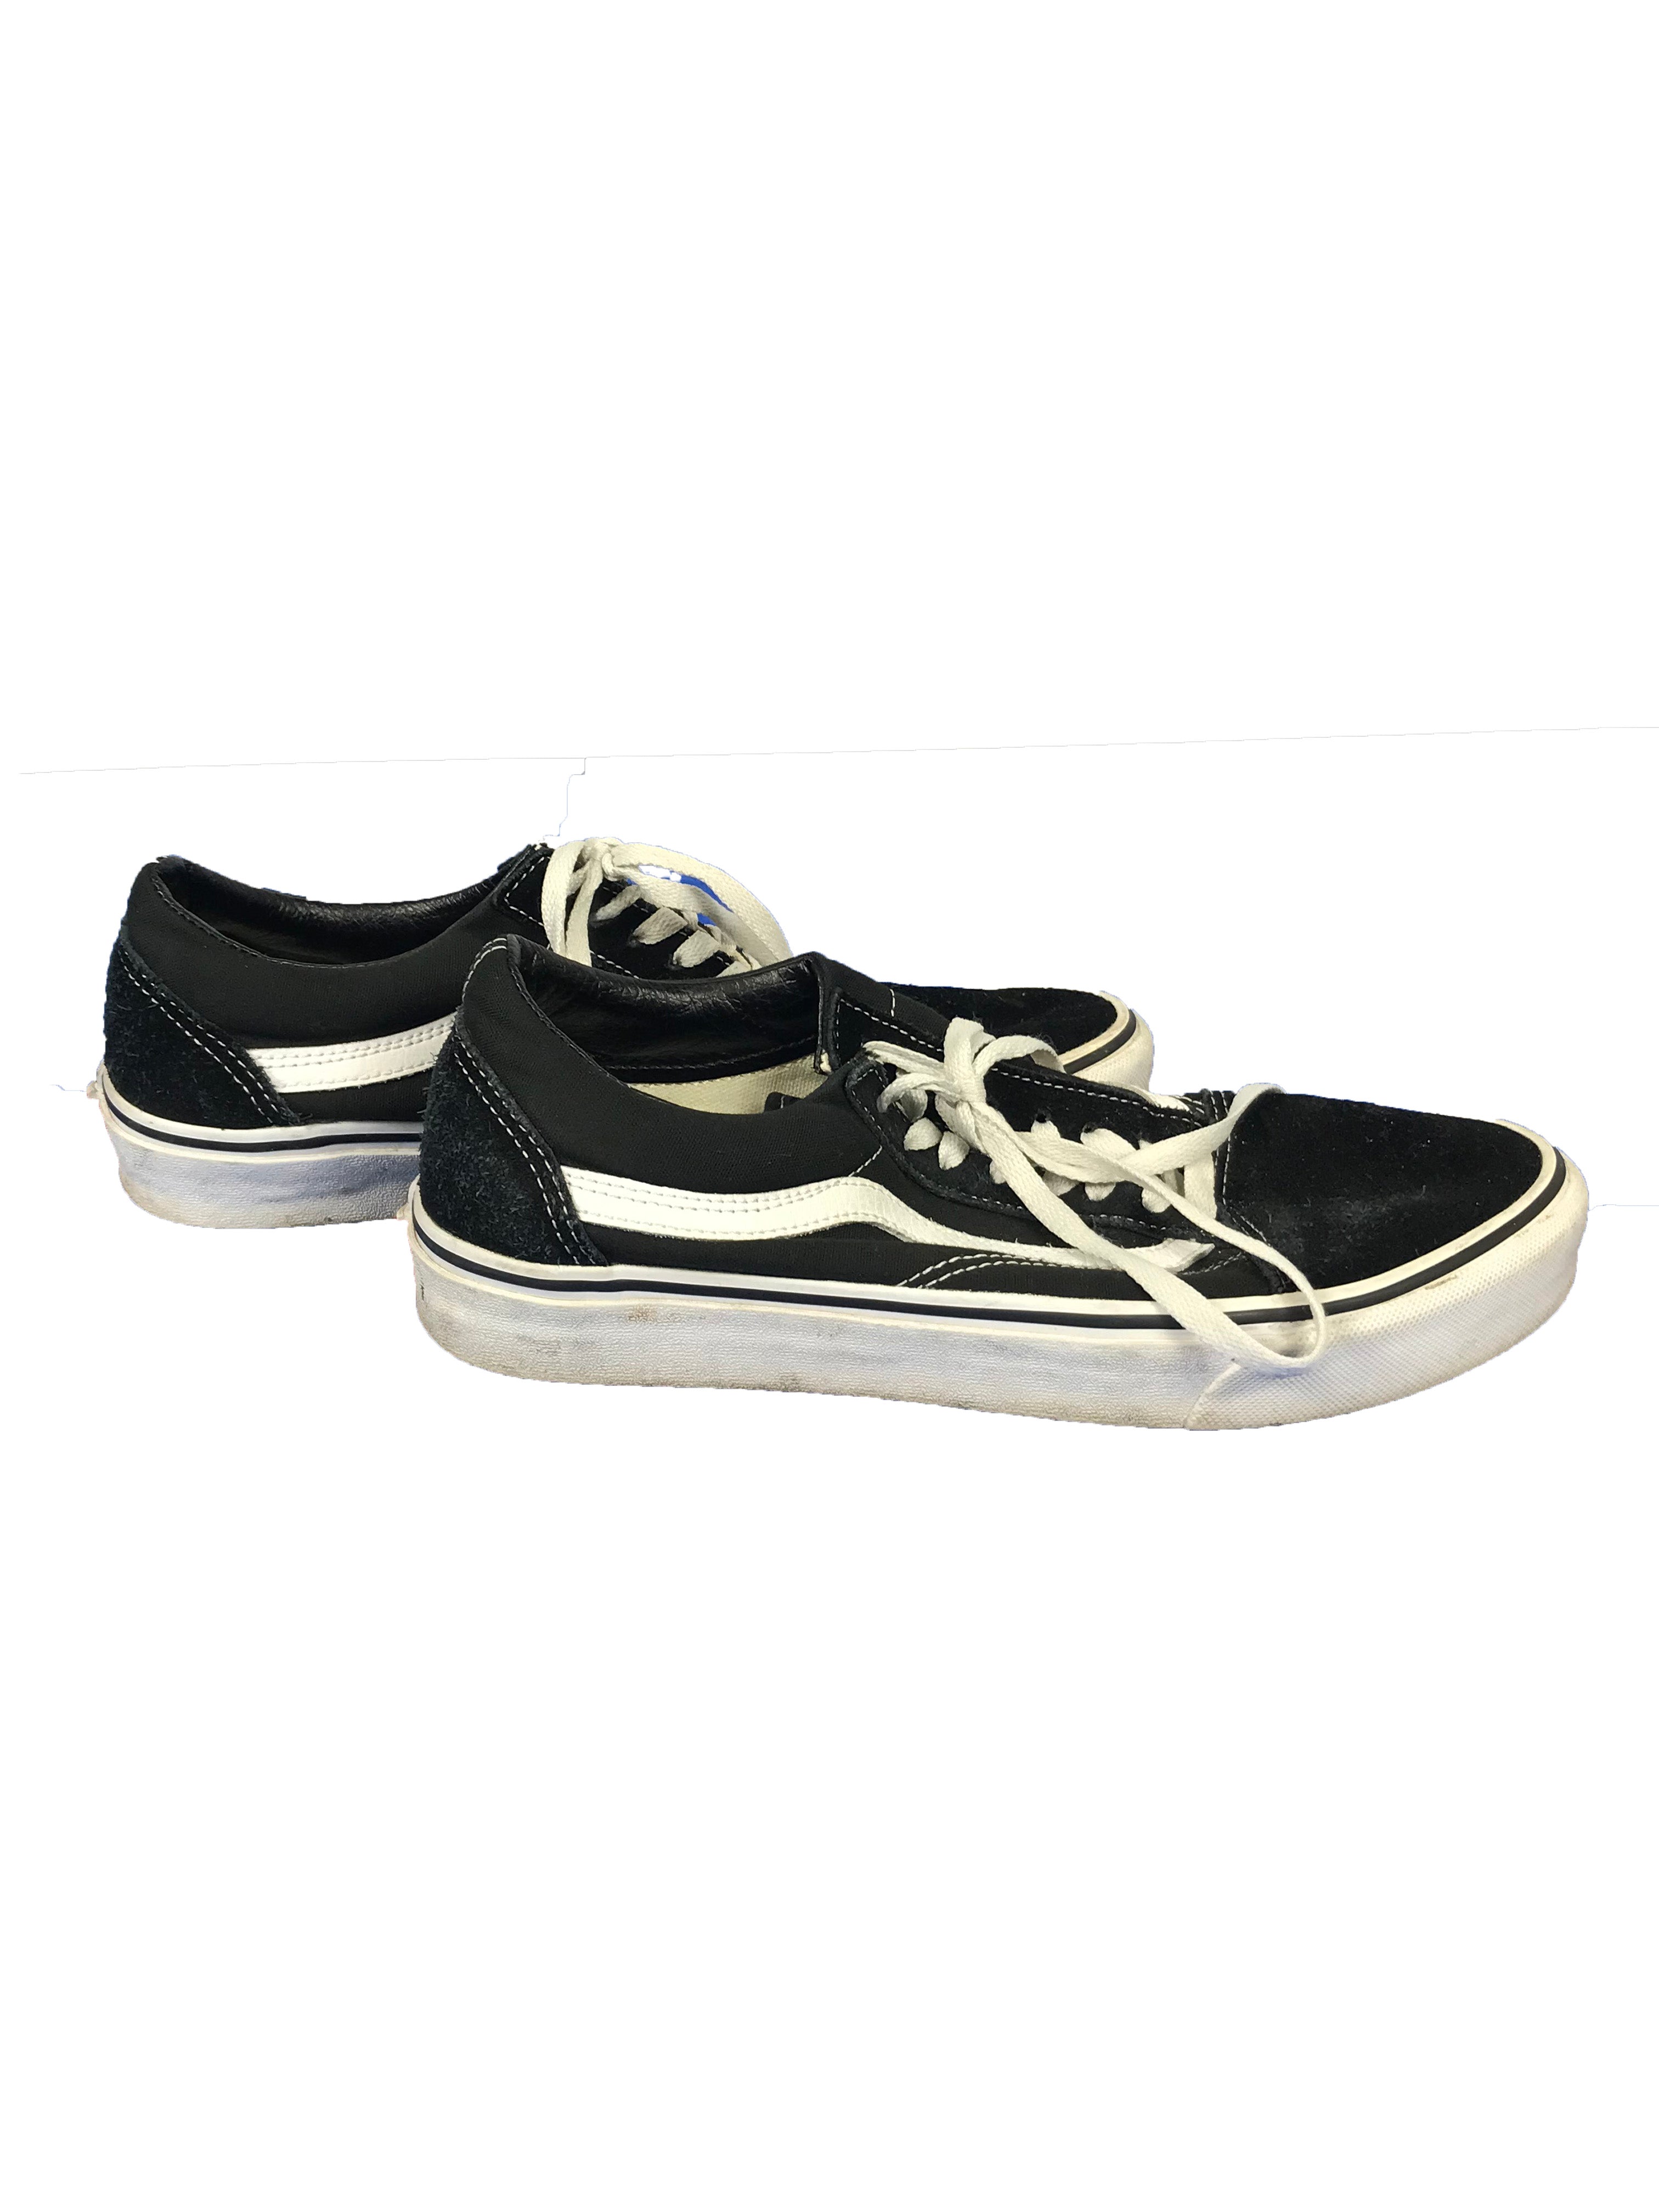 Vans Off The Wall Old Skool Black Low Top Sneaker Unisex Size 8.5/10 – MSU  Surplus Store